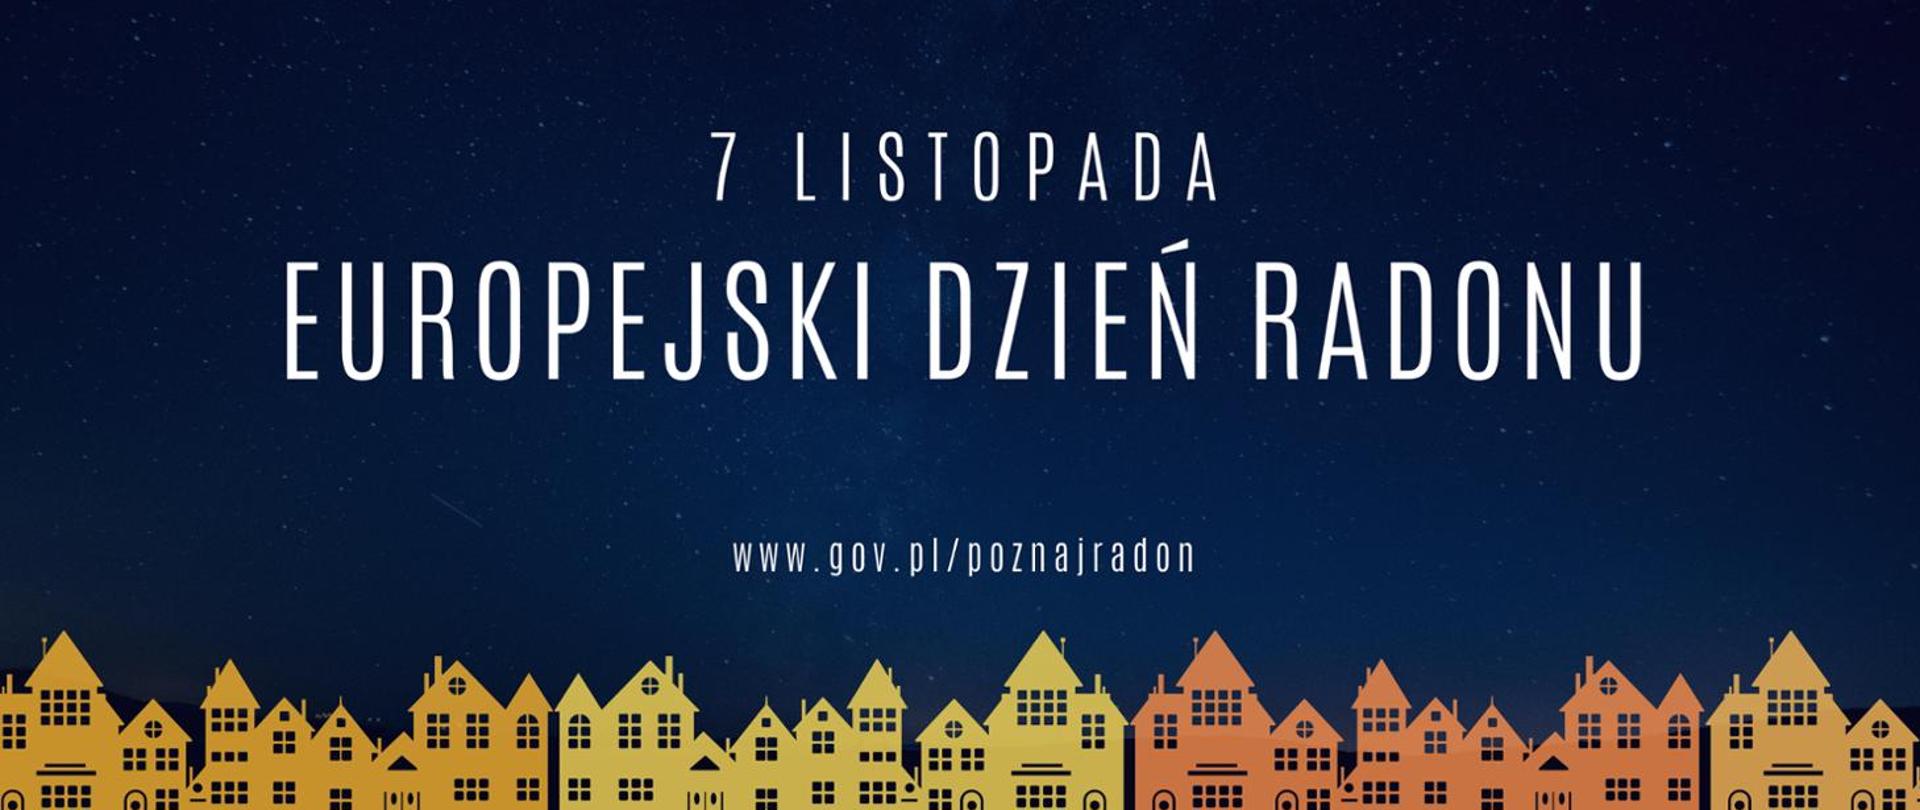 www.gov.pl/poznajradon